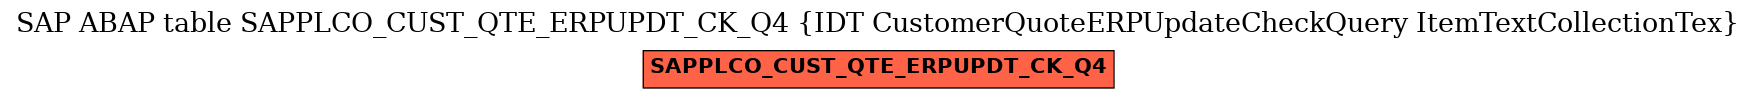 E-R Diagram for table SAPPLCO_CUST_QTE_ERPUPDT_CK_Q4 (IDT CustomerQuoteERPUpdateCheckQuery ItemTextCollectionTex)